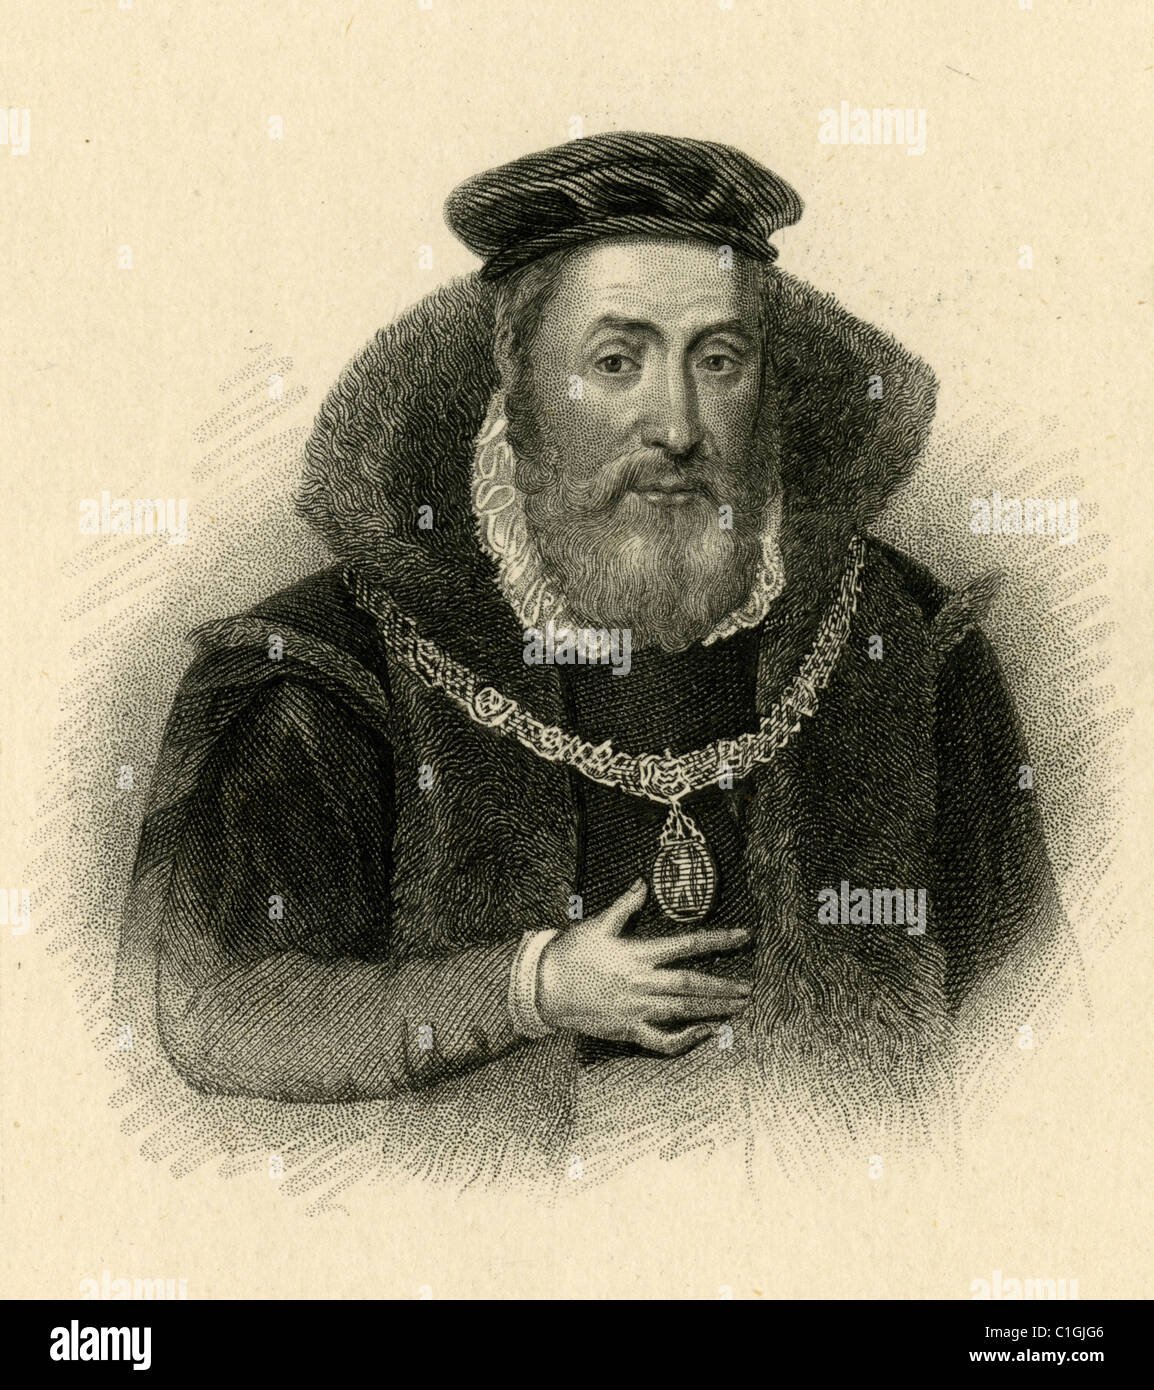 James Hamilton, duc de Châtellerault et 2e comte d'Arran (ch. 1516 - 22 janvier 1575) était un noble écossais. Banque D'Images